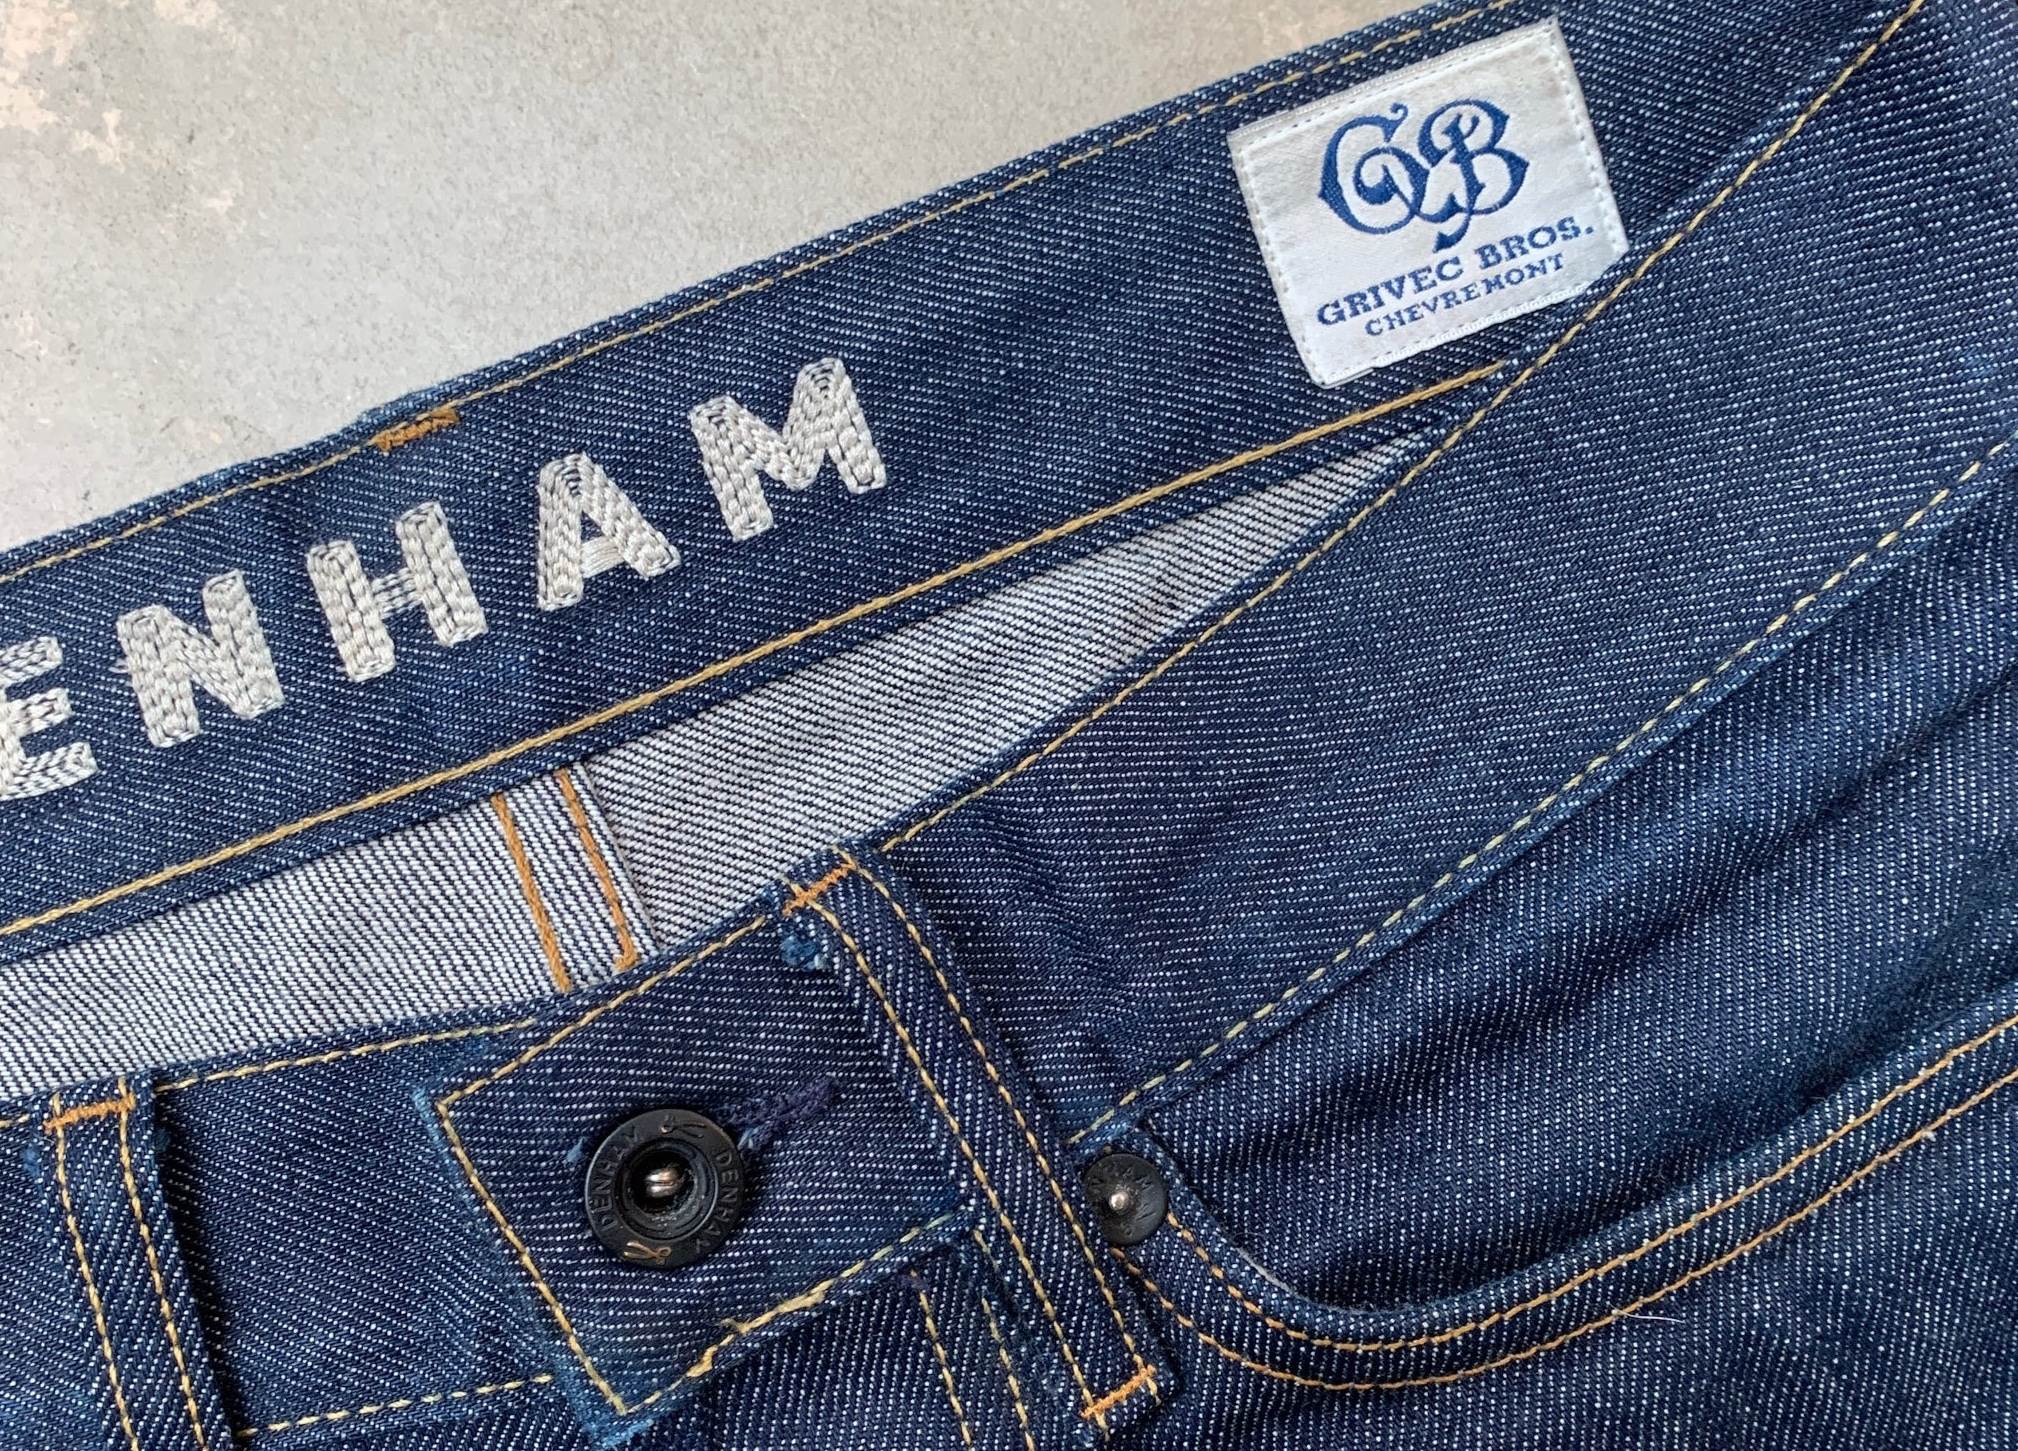 New series of Grivec Bros-made Denham jeans - insidedenim